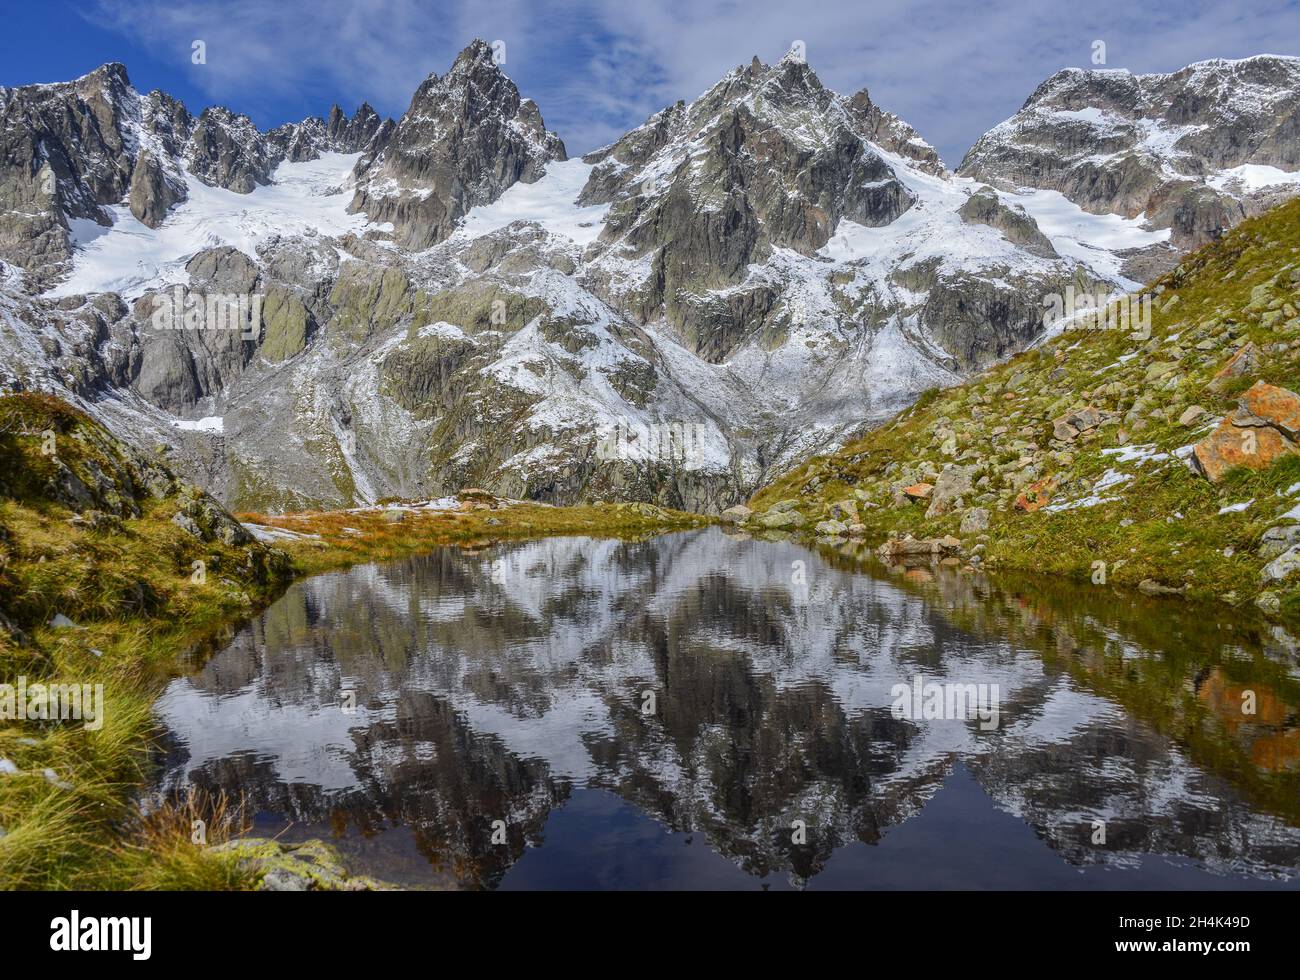 Réflexions de sommets enneigés dans un lac alpin, Wendenhorn, canton d'Uri, Suisse Banque D'Images